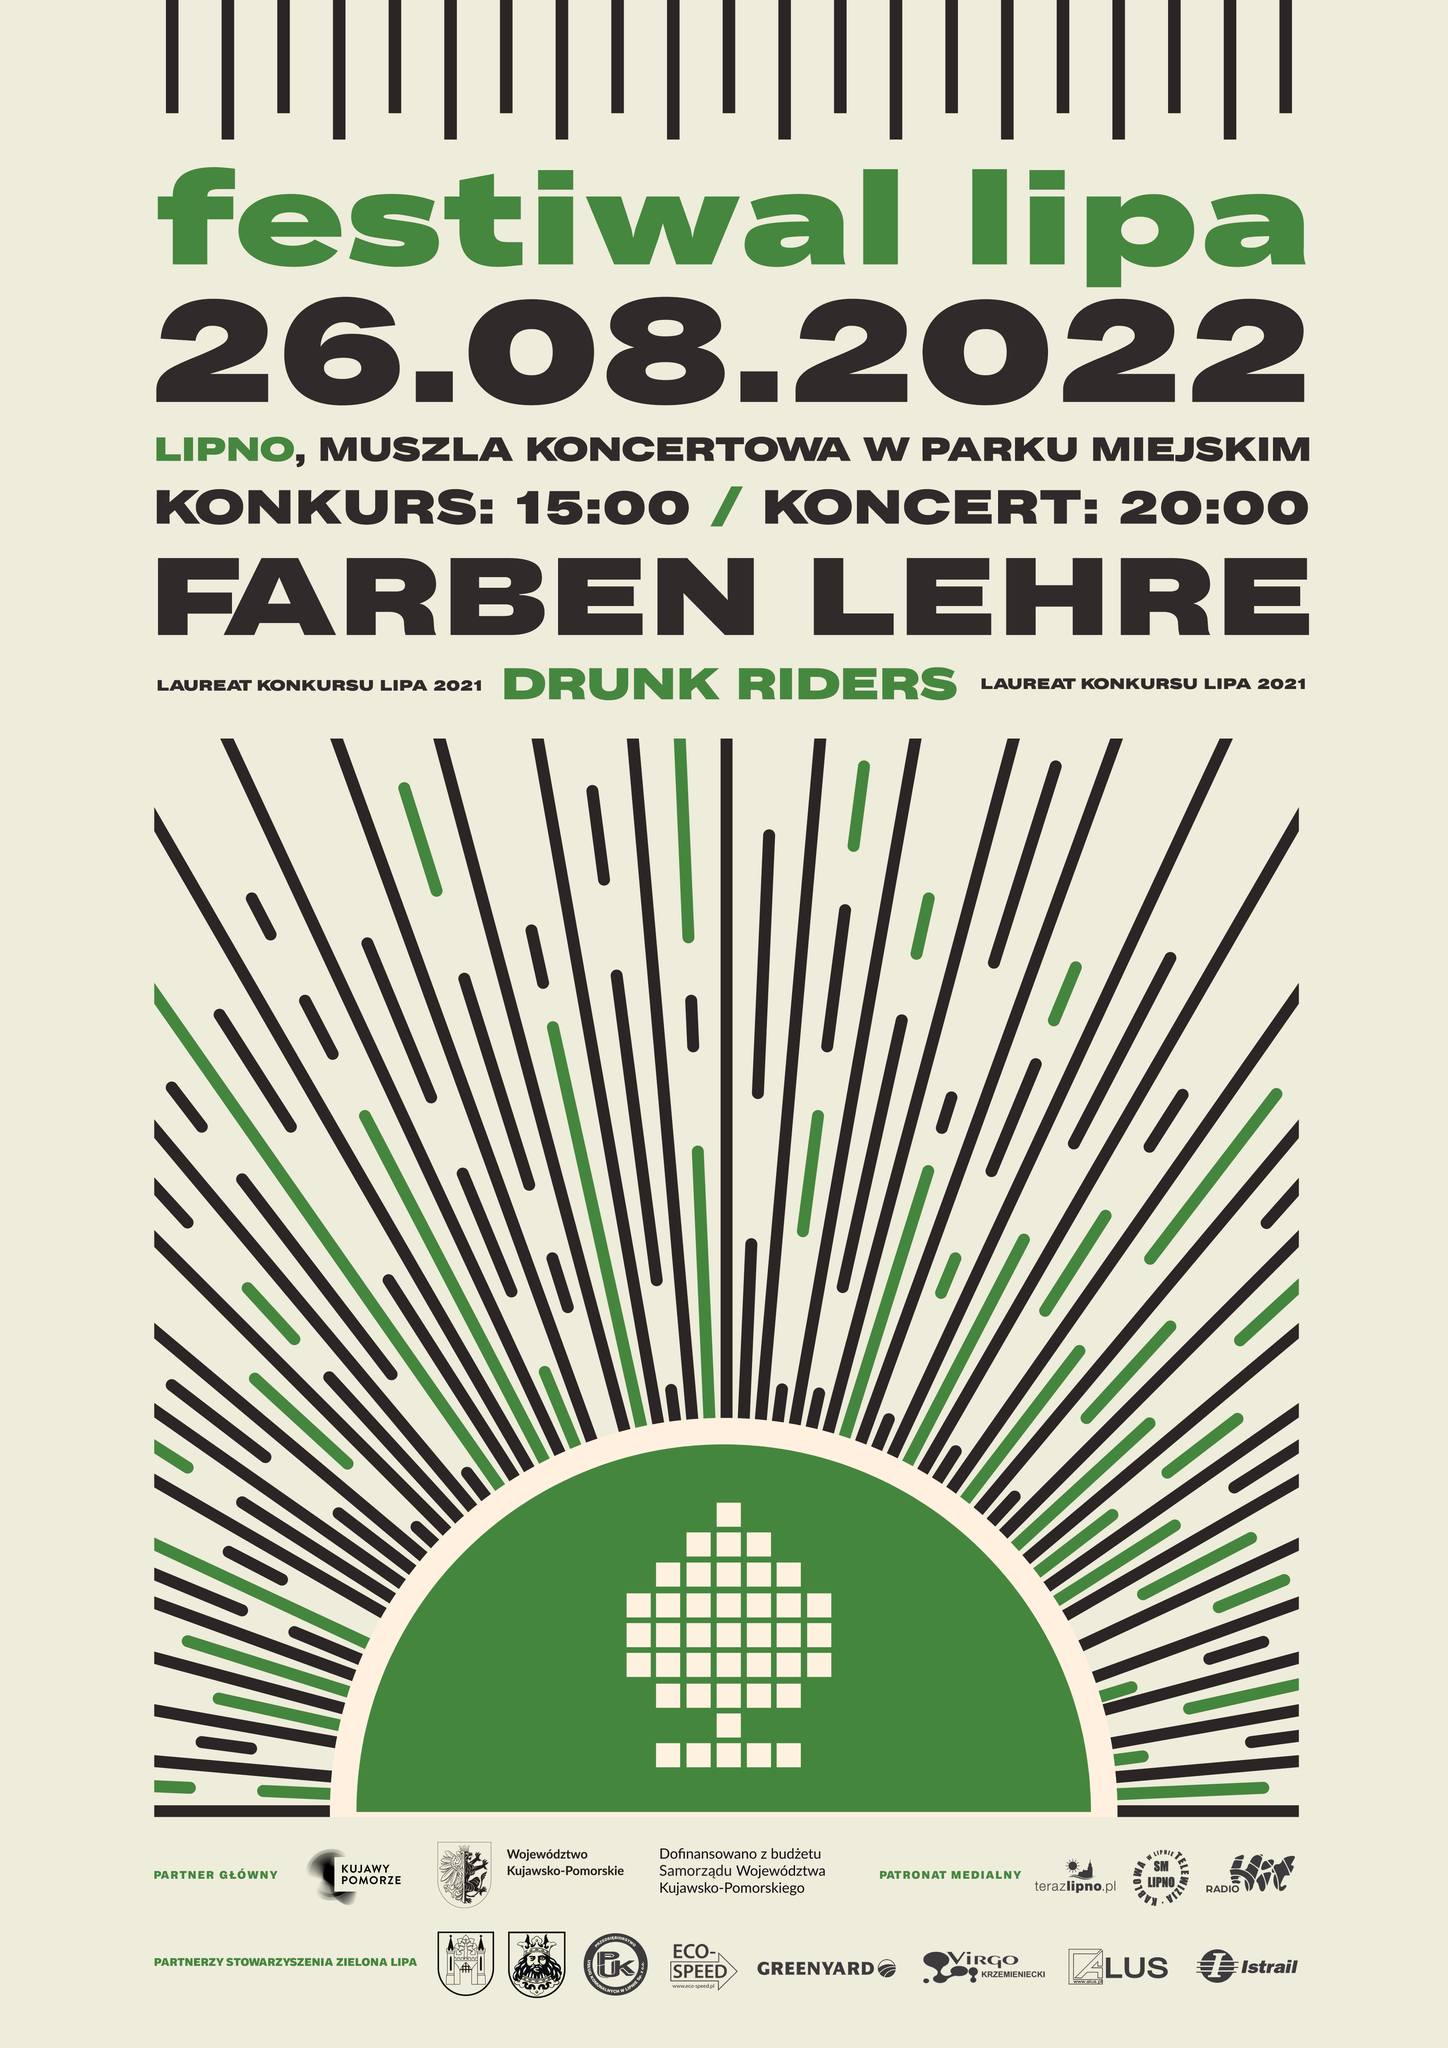 Plakat informacyjny - Koncert Lipa 2022 (treść i linki w rozwinięciu wiadomości)